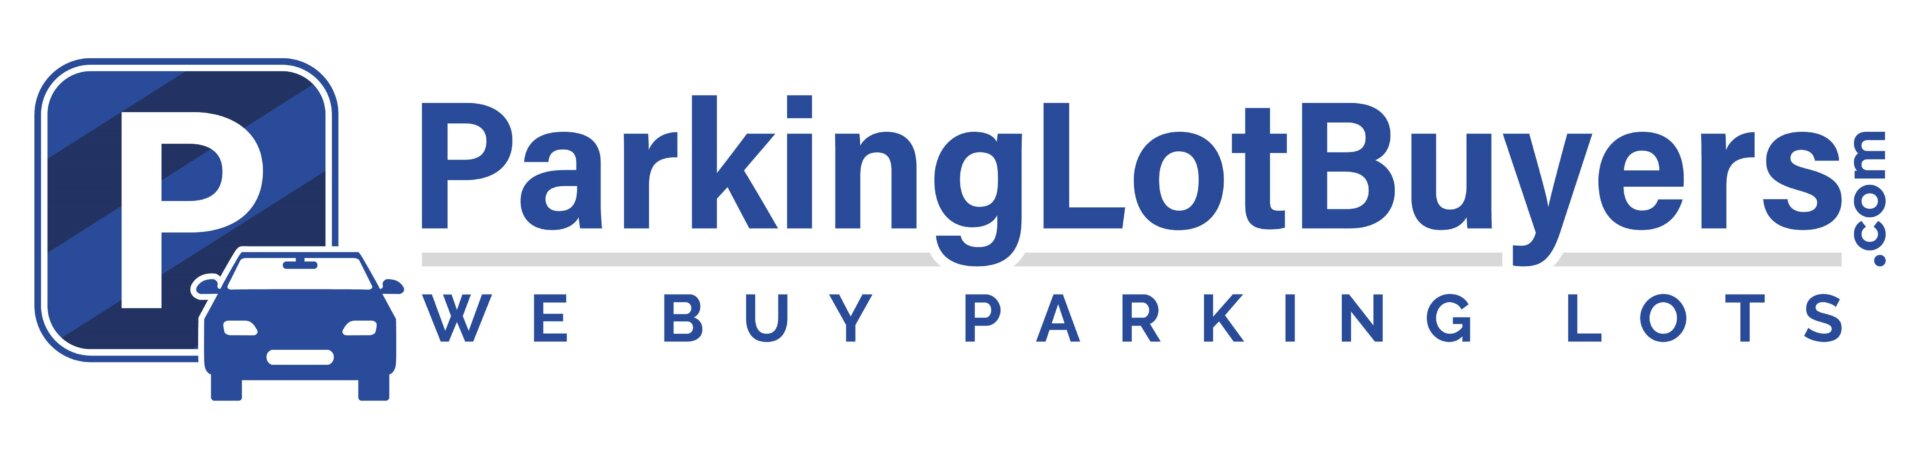 ParkingLotBuyers.com logo